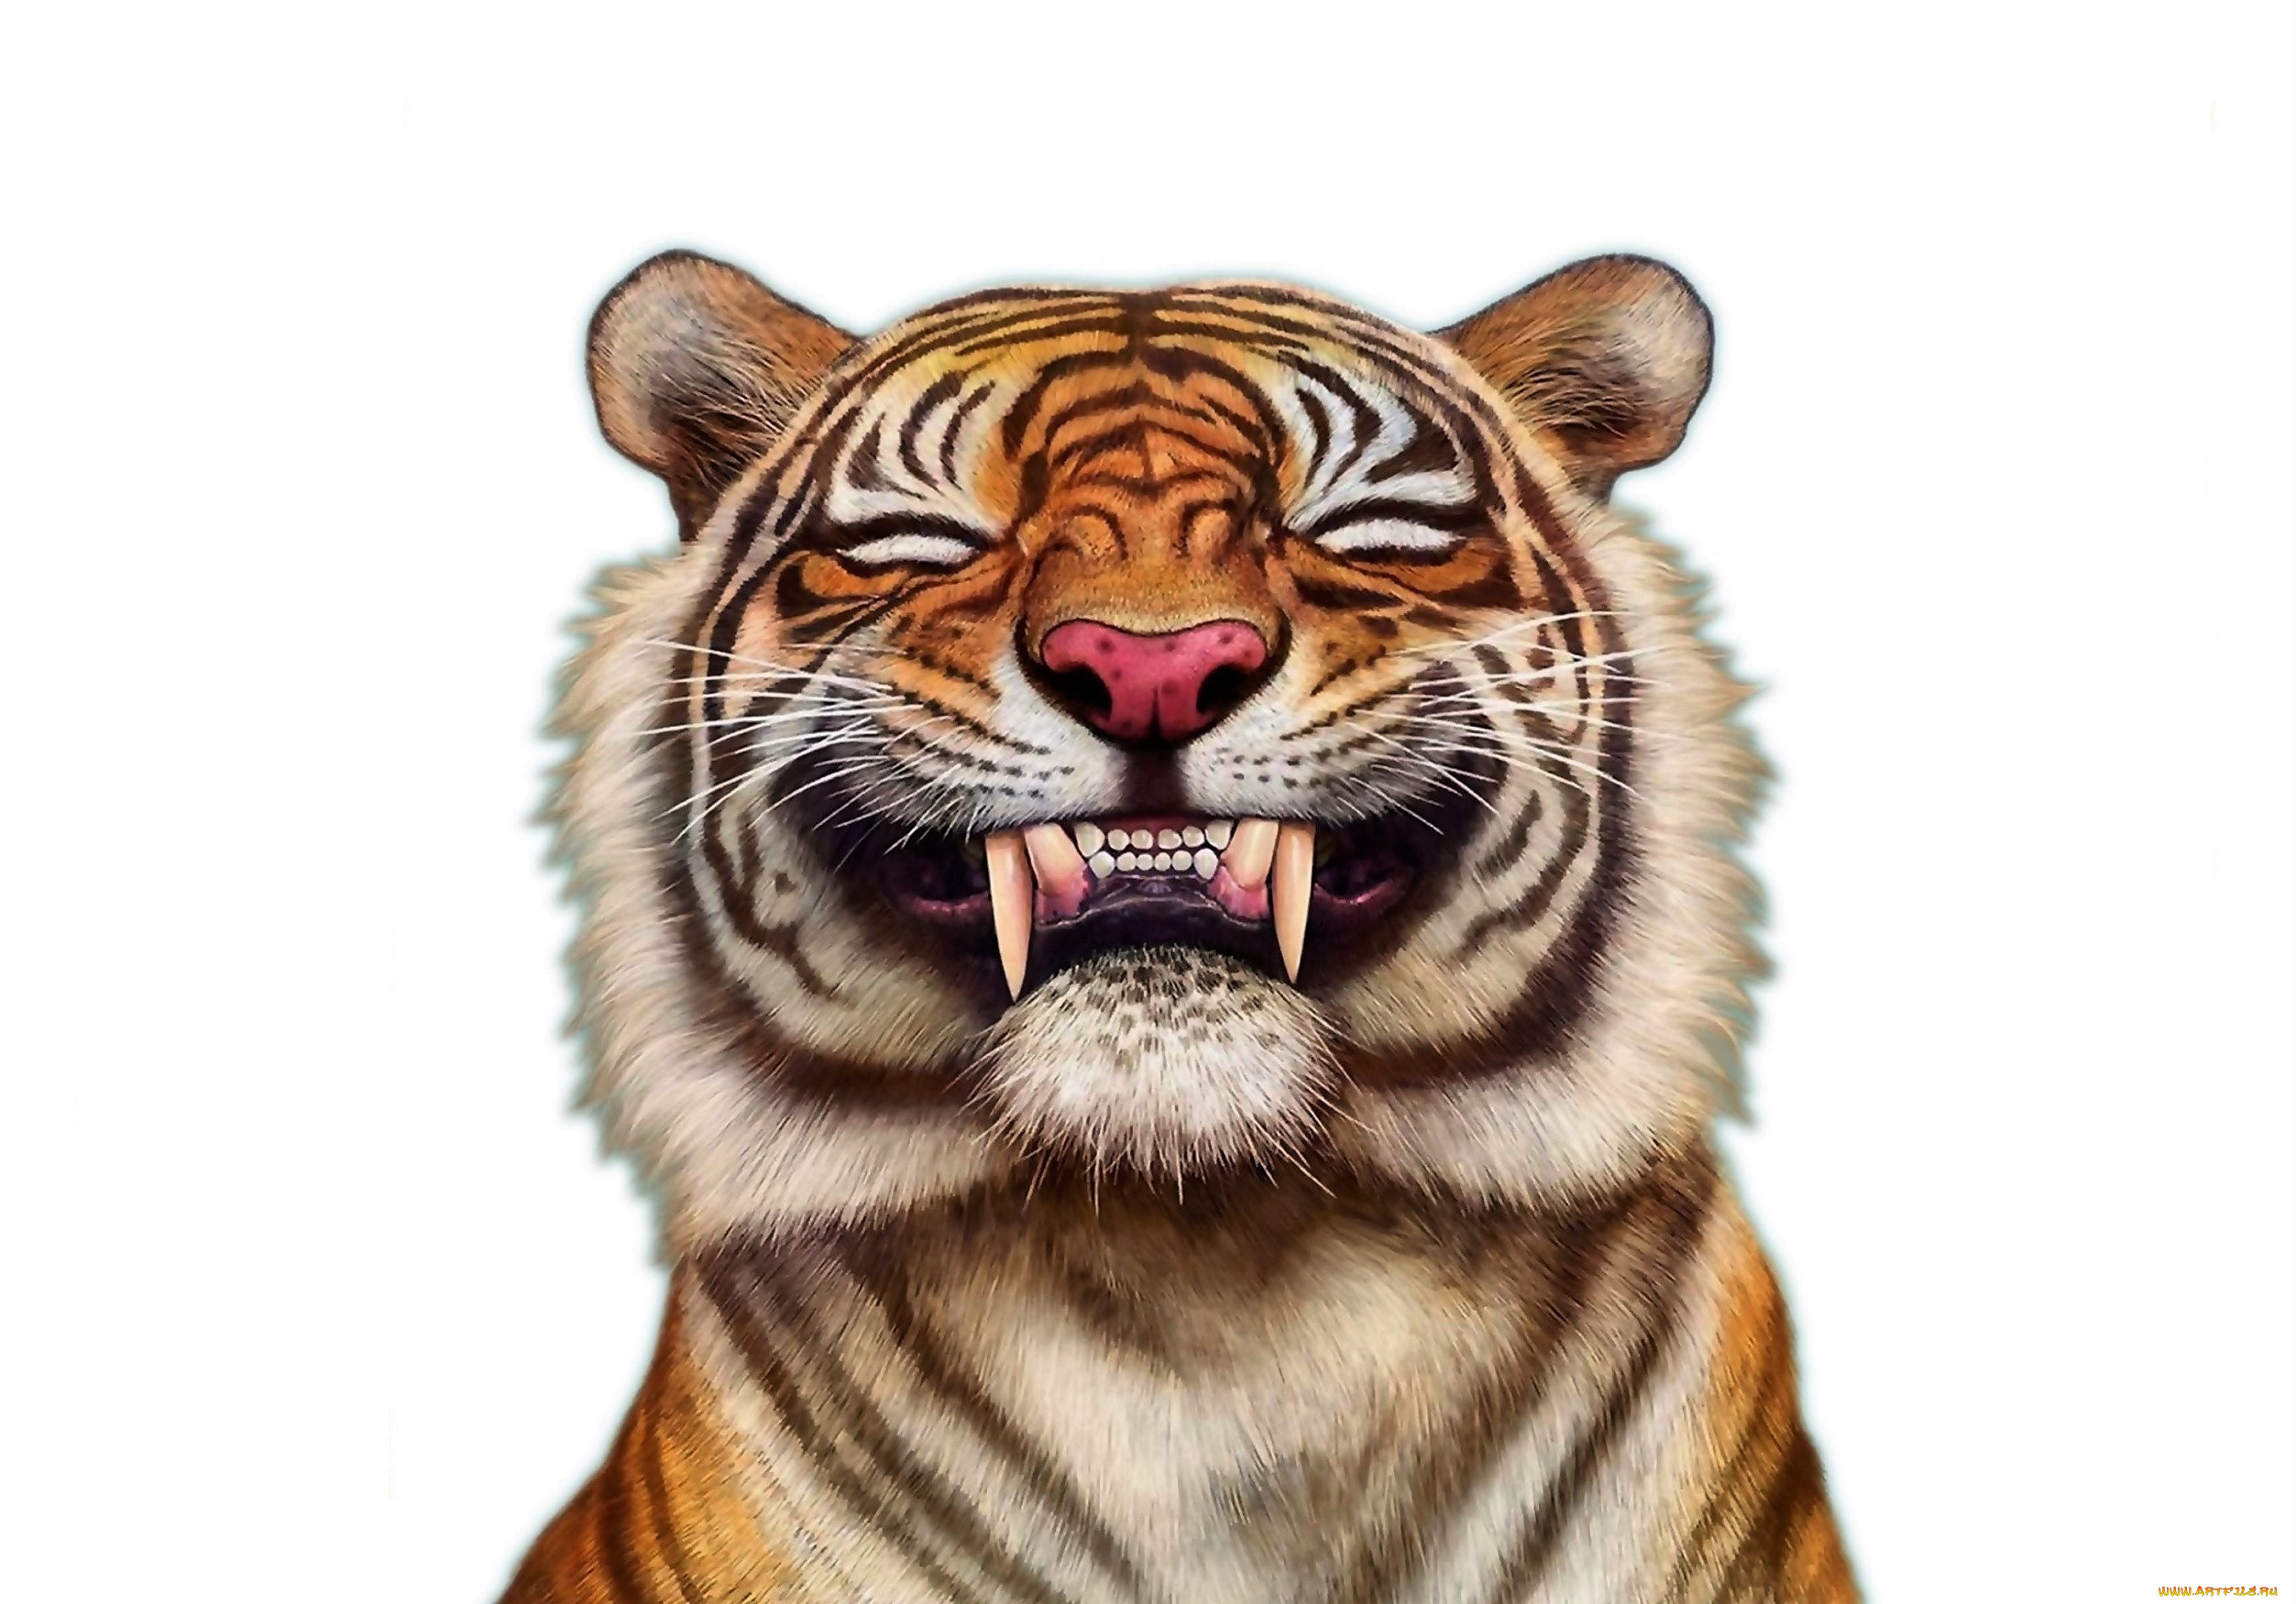 General 2505x1750 artwork animals mammals tiger white background simple background